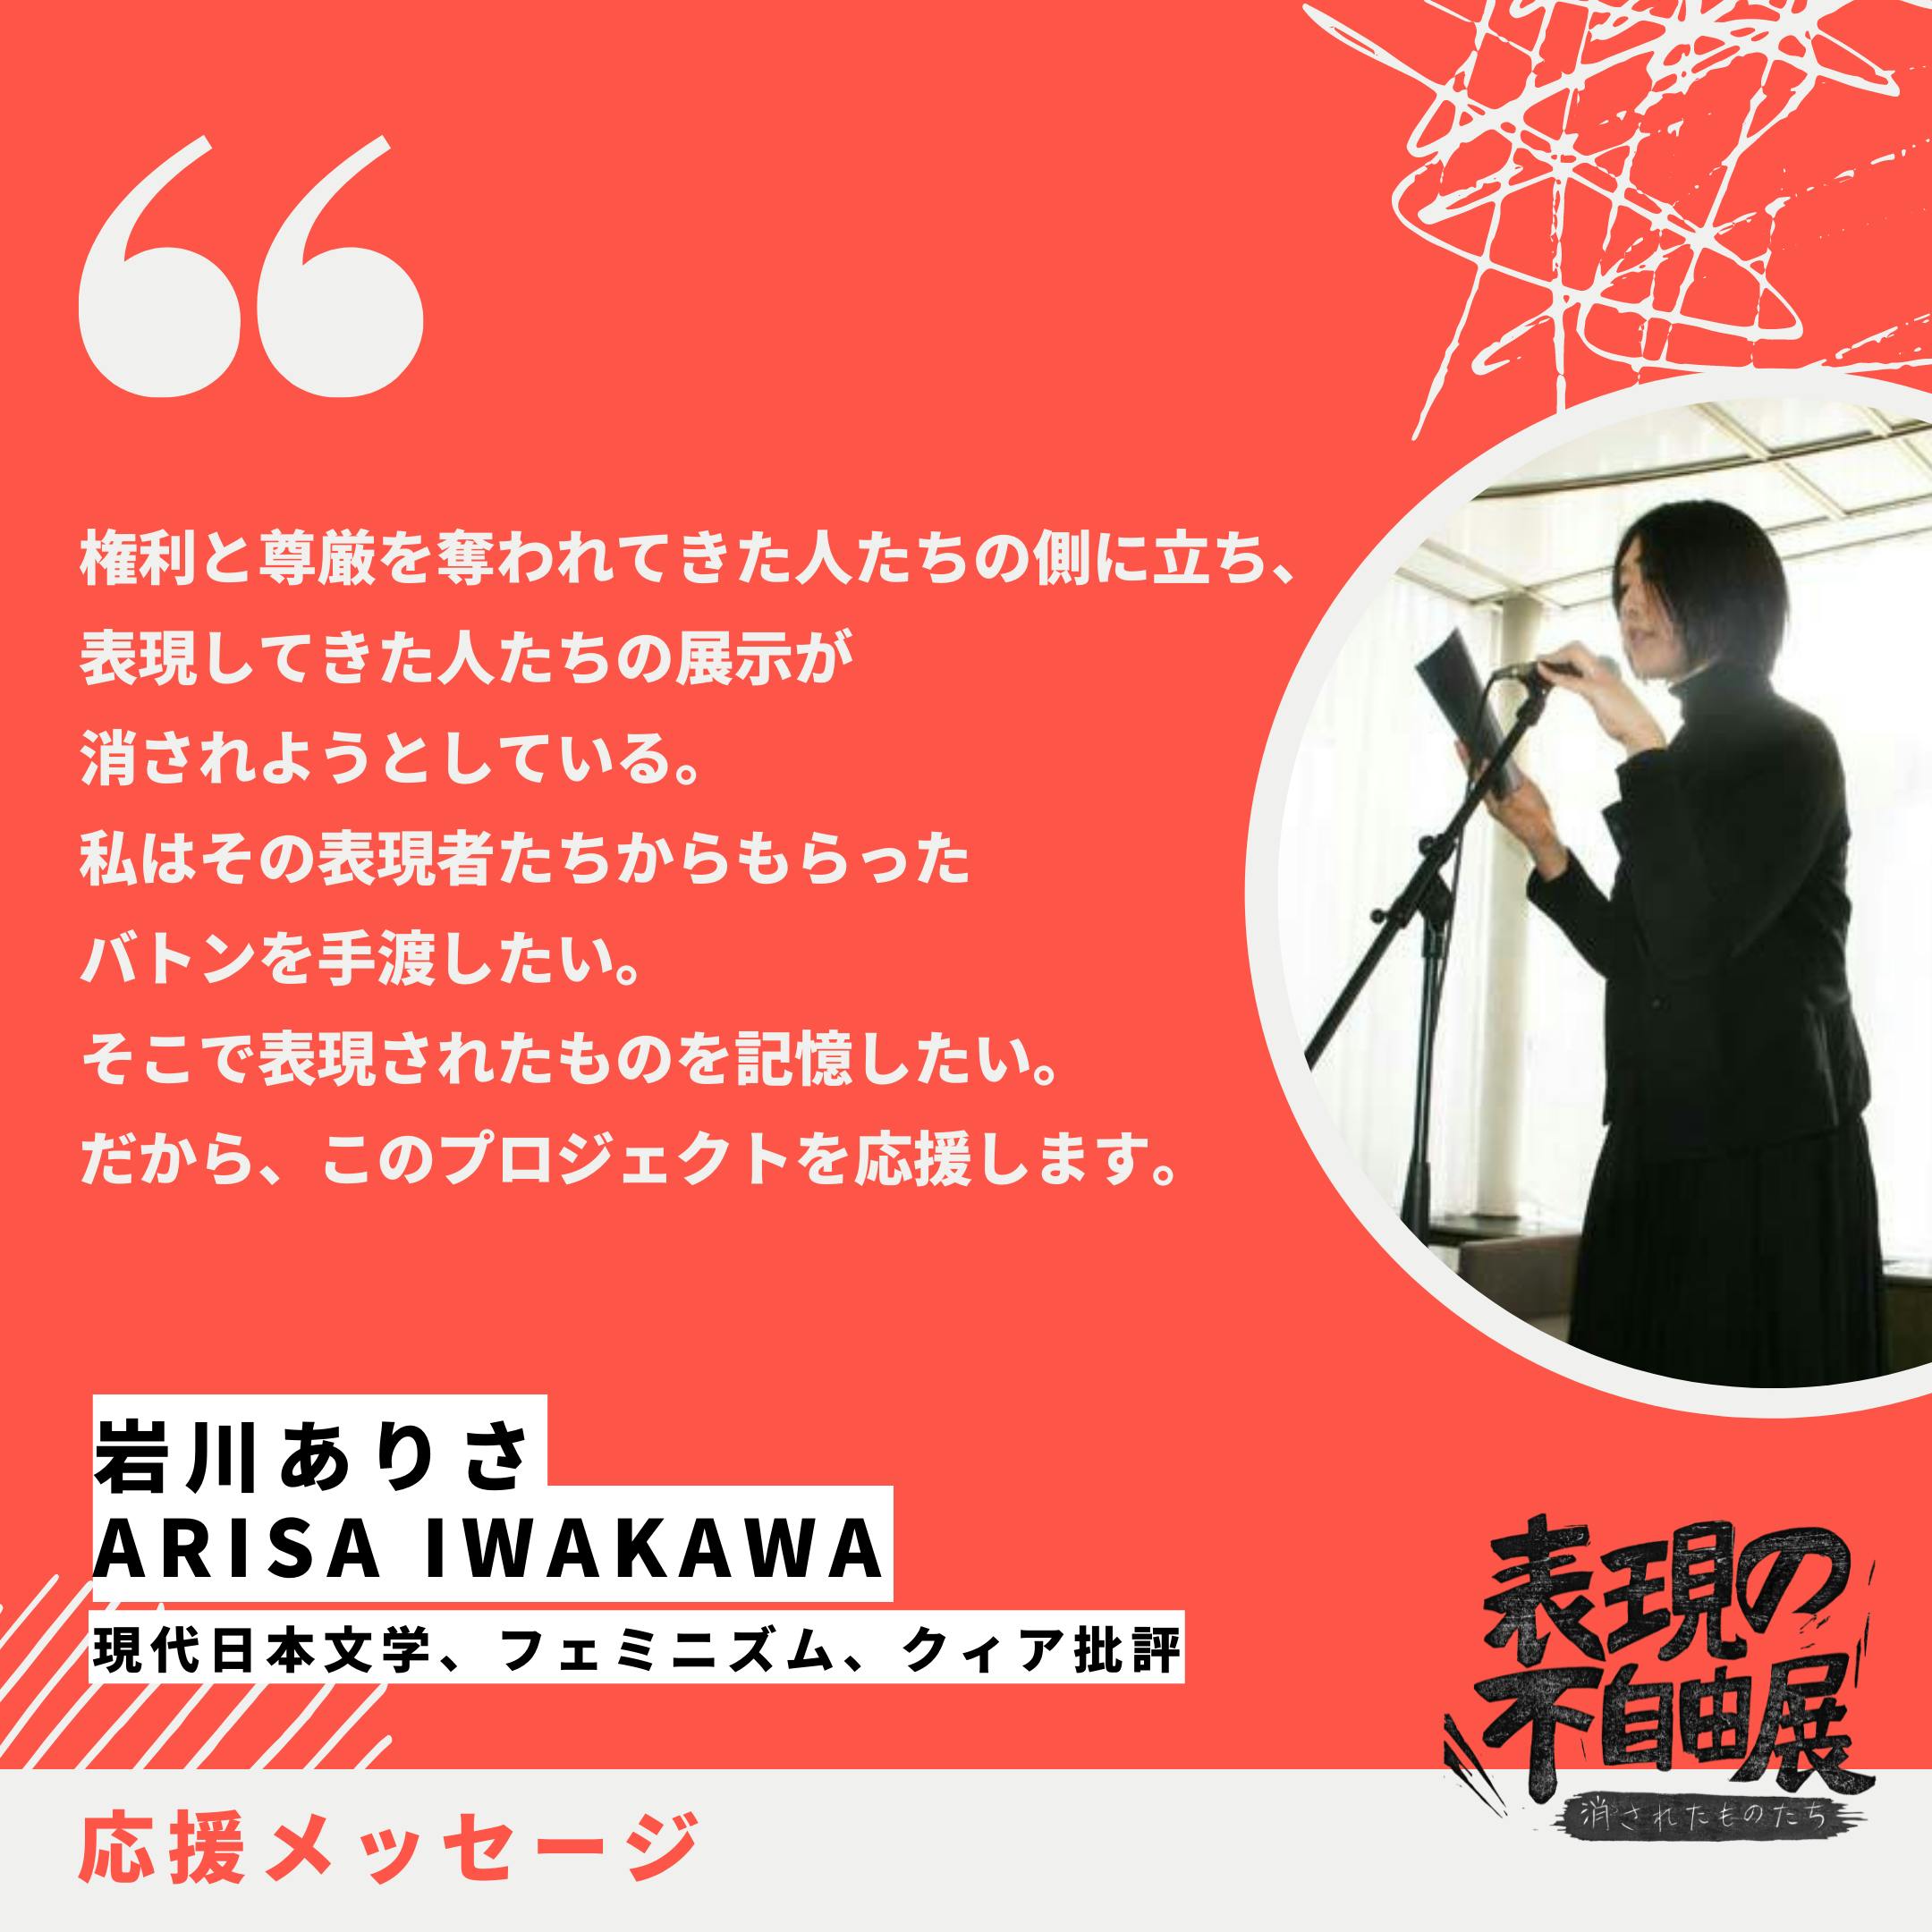 CAMPFIRE　岩川ありささん（現代日本文学、フェミニズム、クィア批評）より、応援メッセージが届きました！　(キャンプファイヤー)